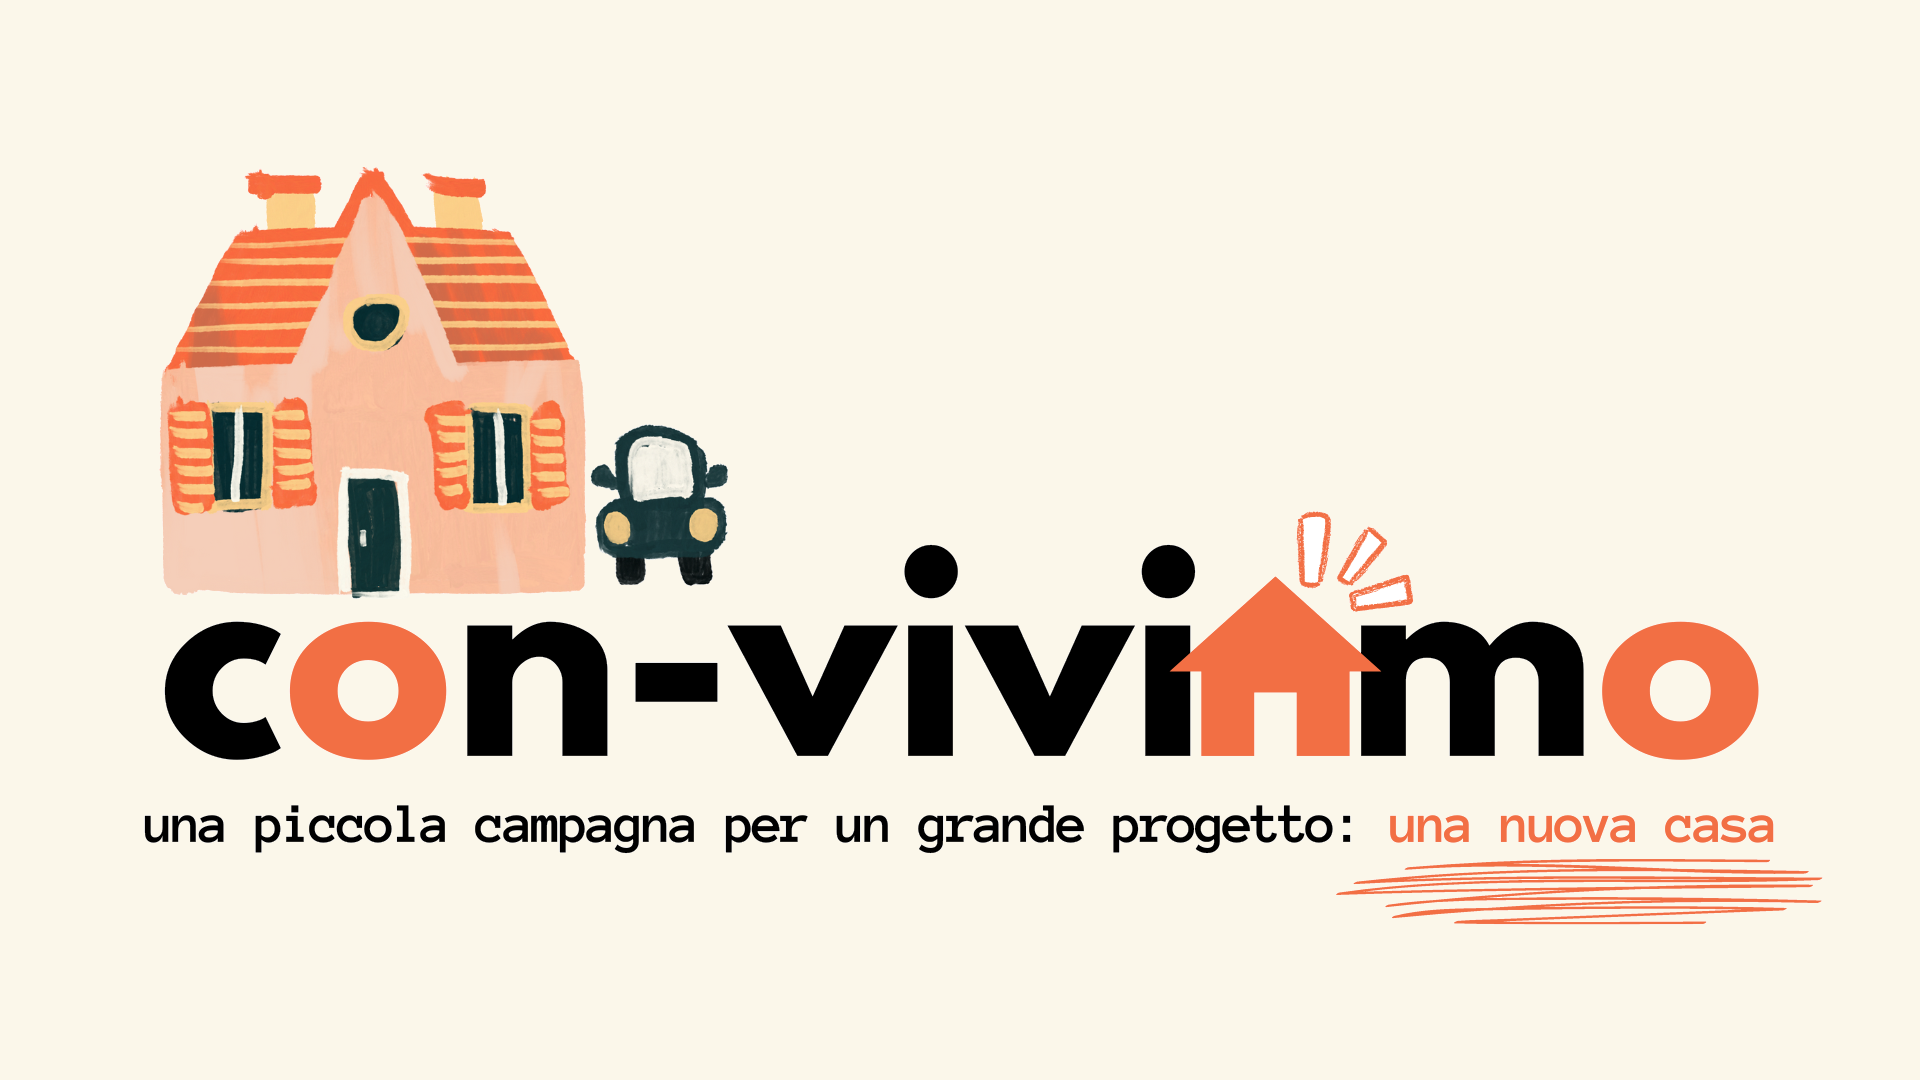 CON-VIVIAMO "una piccola campagna per un grande progetto: una nuova casa"